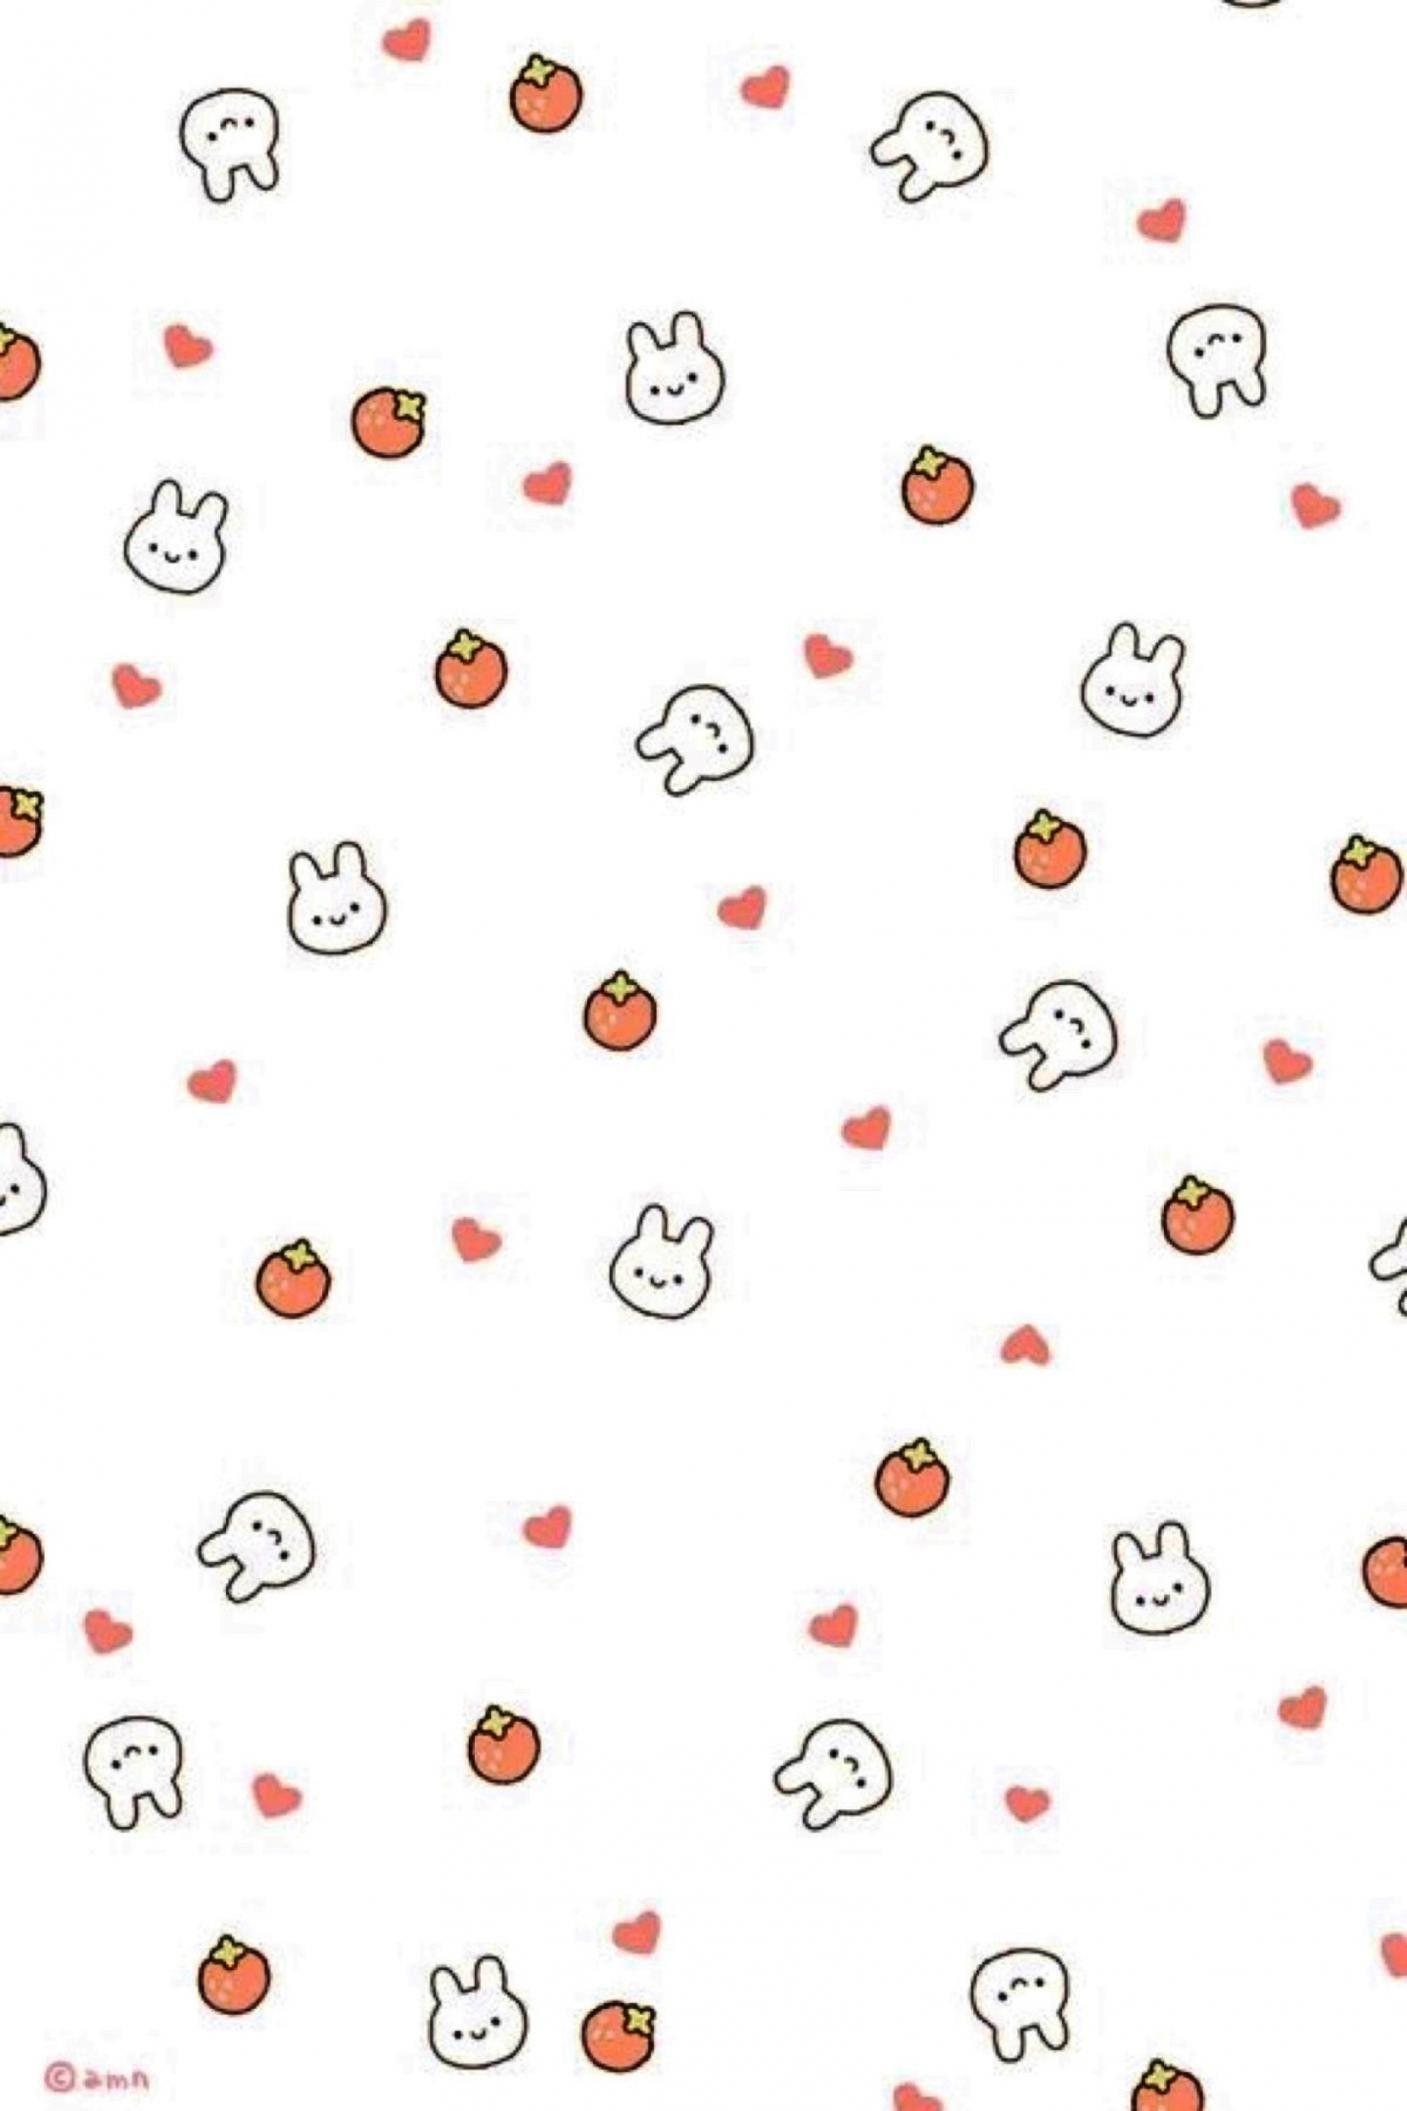 48+] Cute Wallpaper Backgrounds for iPad - WallpaperSafari